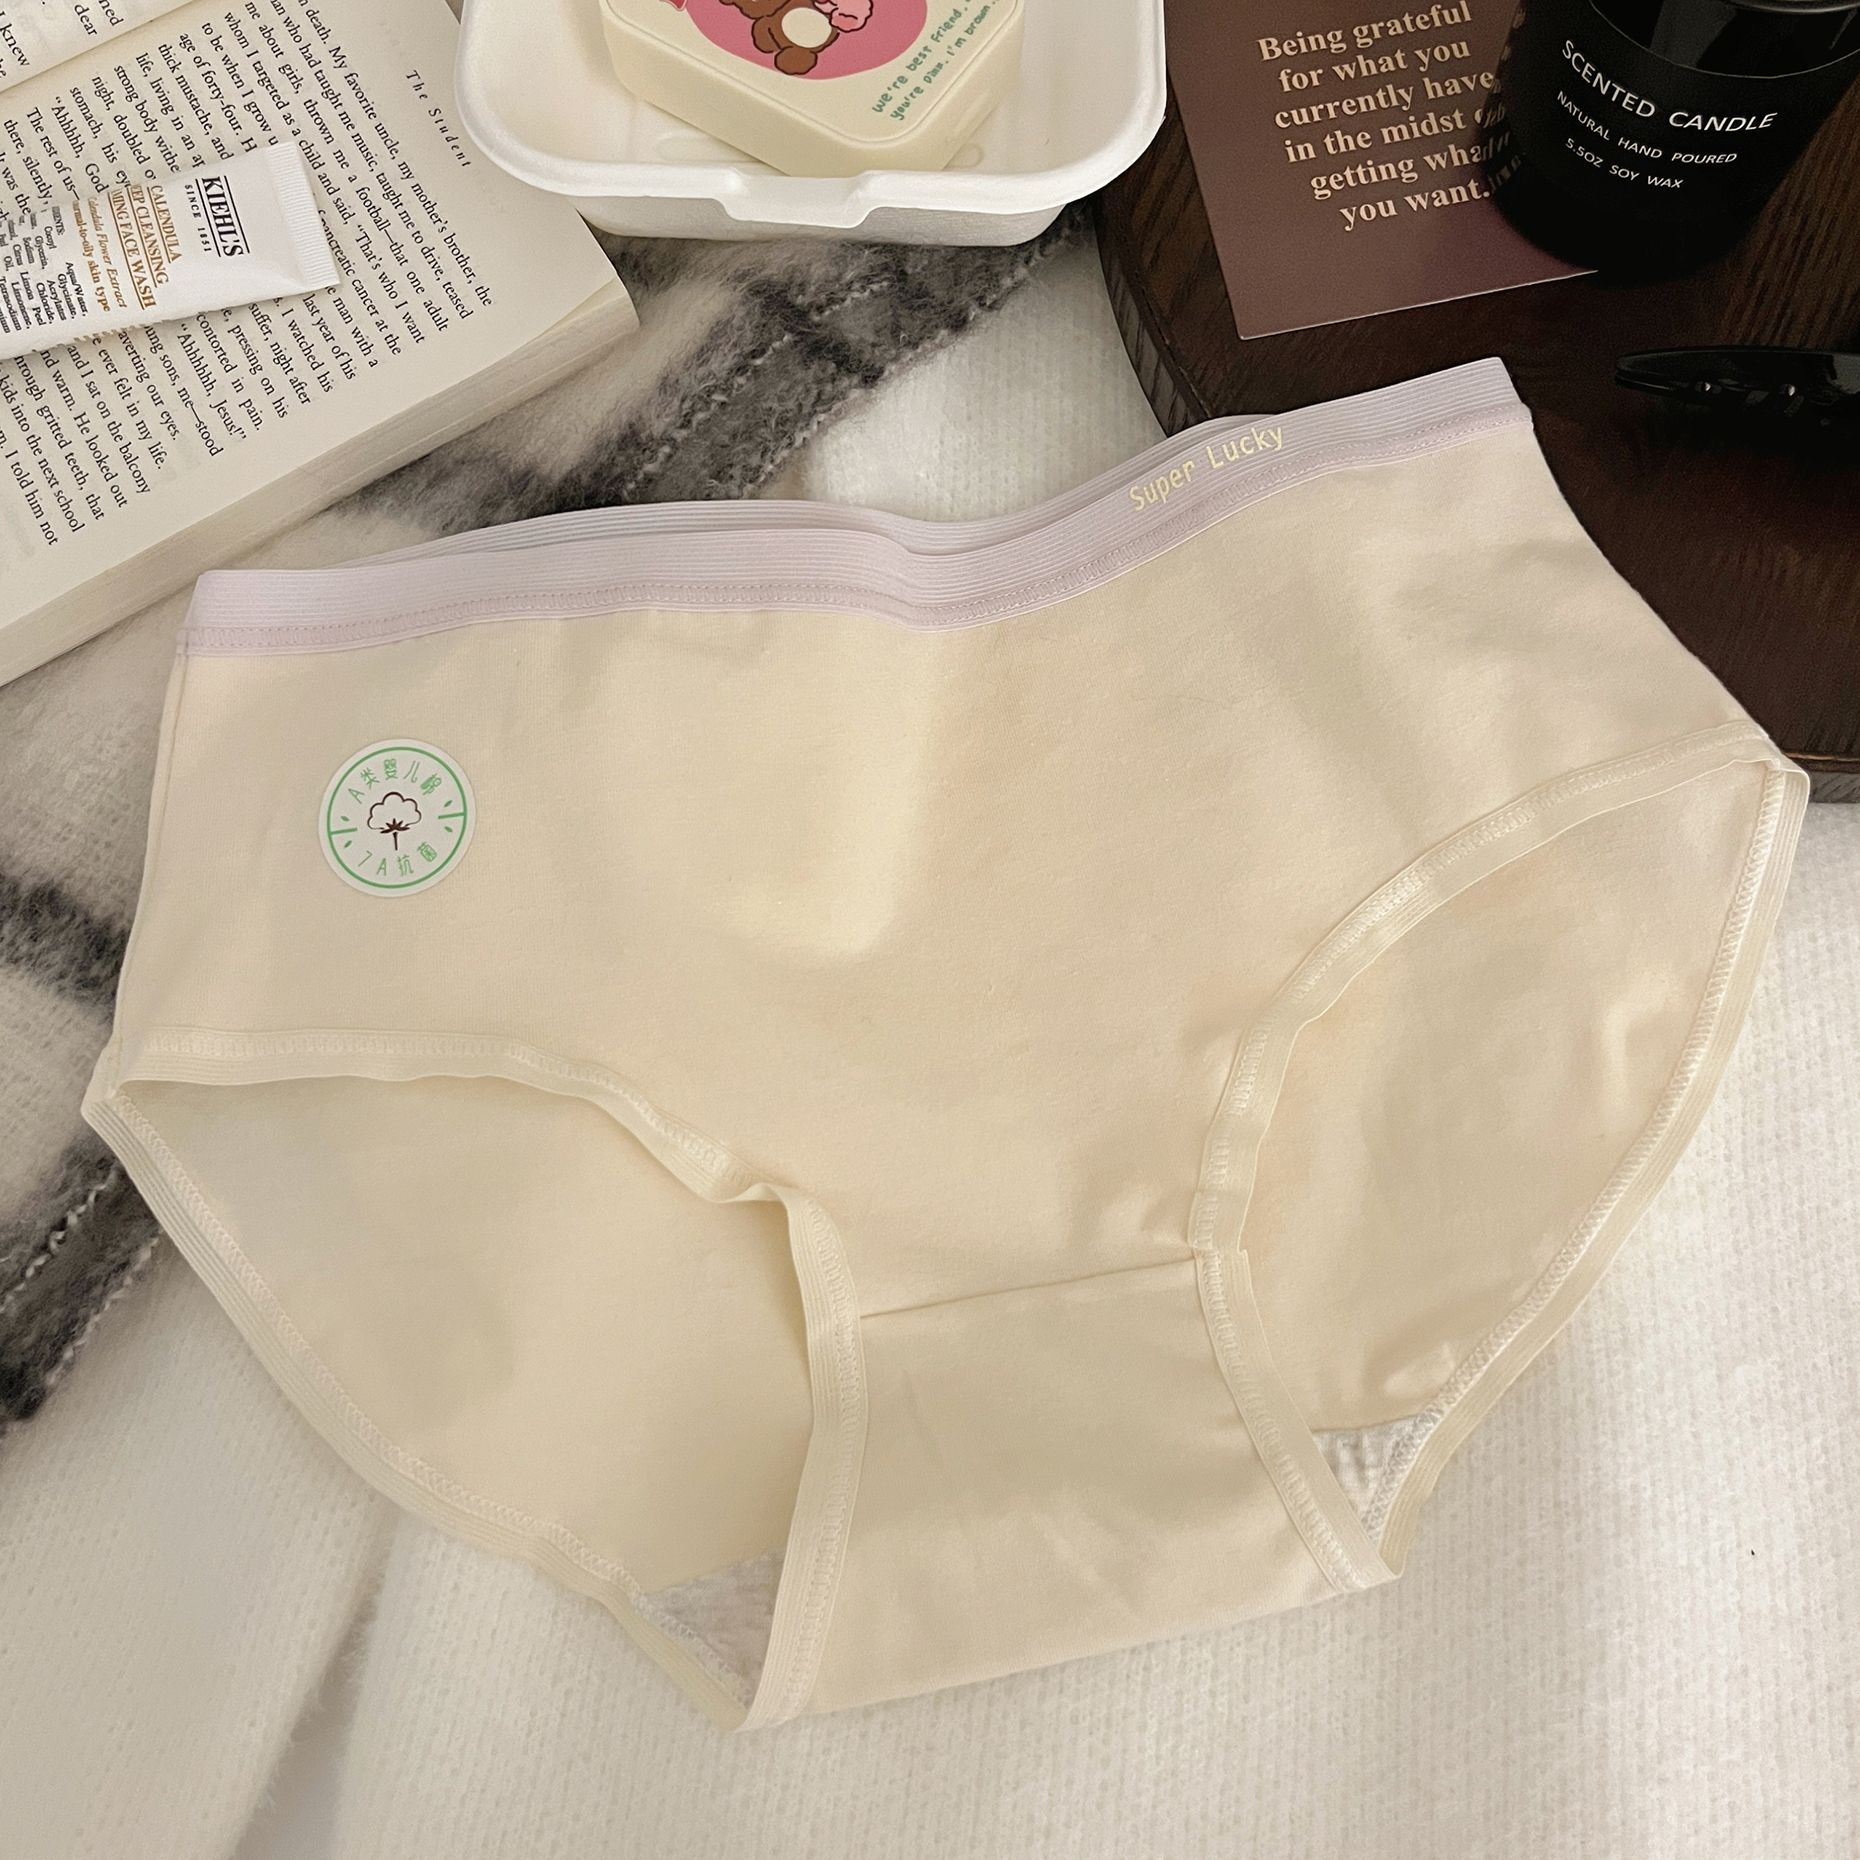 7A Cotton Underwear Women's Class A Baby Cotton Cotton Anti-Bottom Simple Girl Seamless Underwear 50S Women's Underwear